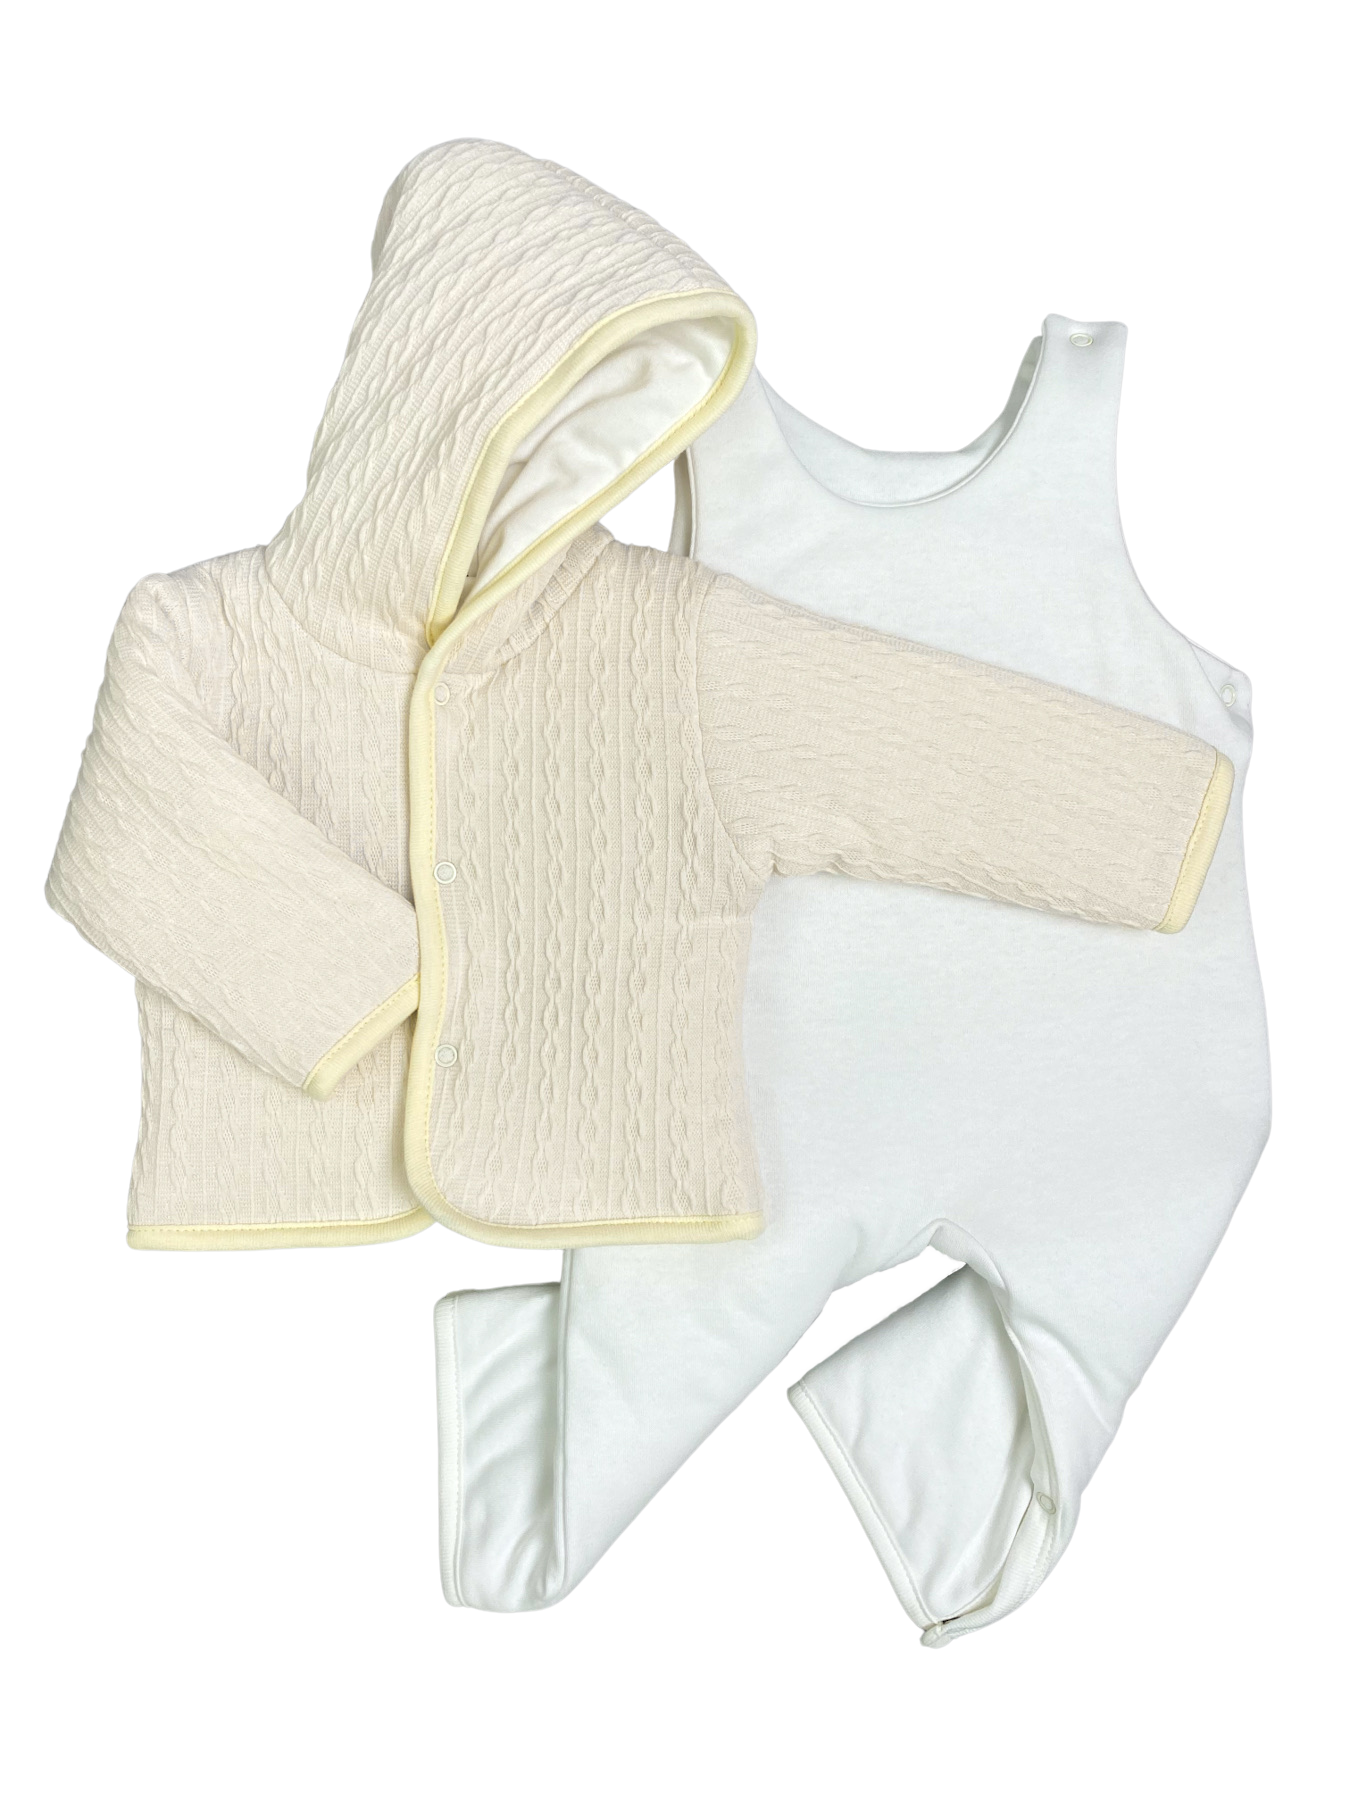 Комплект верхней одежды Clariss Вязаный микс, бежевый; белый, 62 комплект верхней одежды ad9315 brown 122